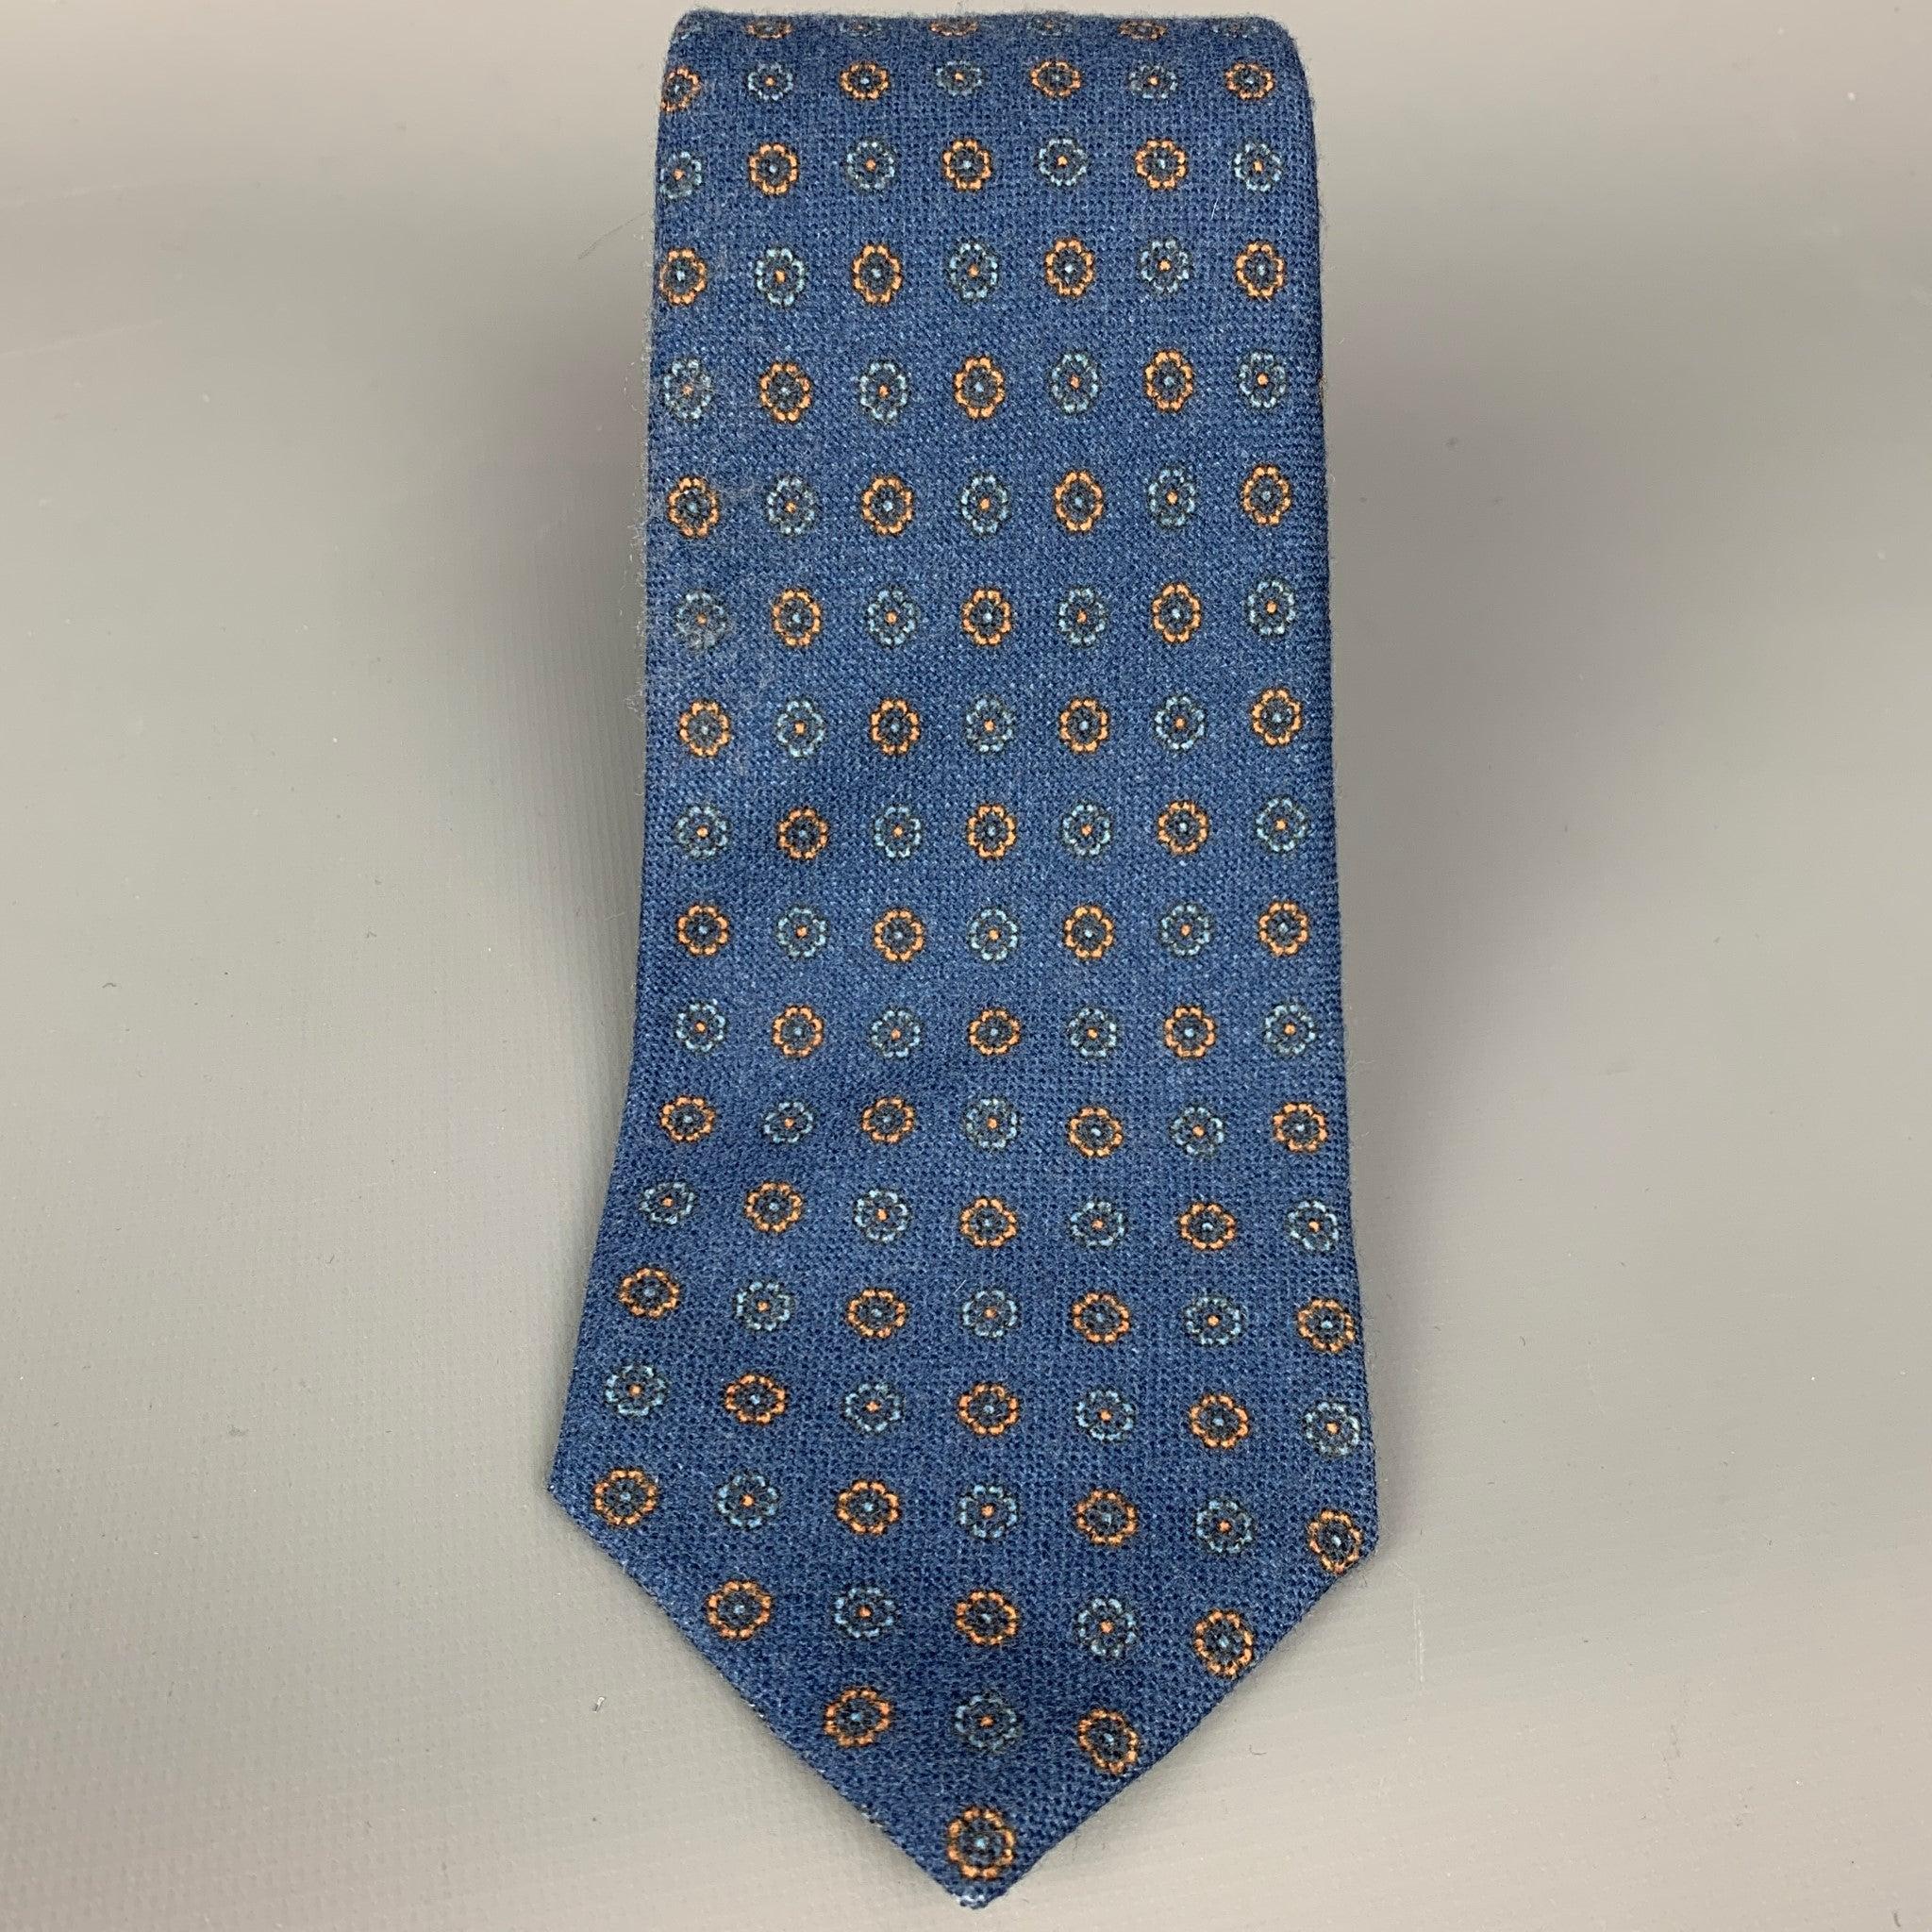 La cravate Isaia se décline dans un lainage floral bleu et jaune. Fabriquées en Italie.
Très bon état d'origine. 

Mesures : 
  Largeur : 3,5 pouces 
  
  
 
Référence Sui Generis : 108428
Catégorie : Cravate
Plus de détails
    
Marque : 